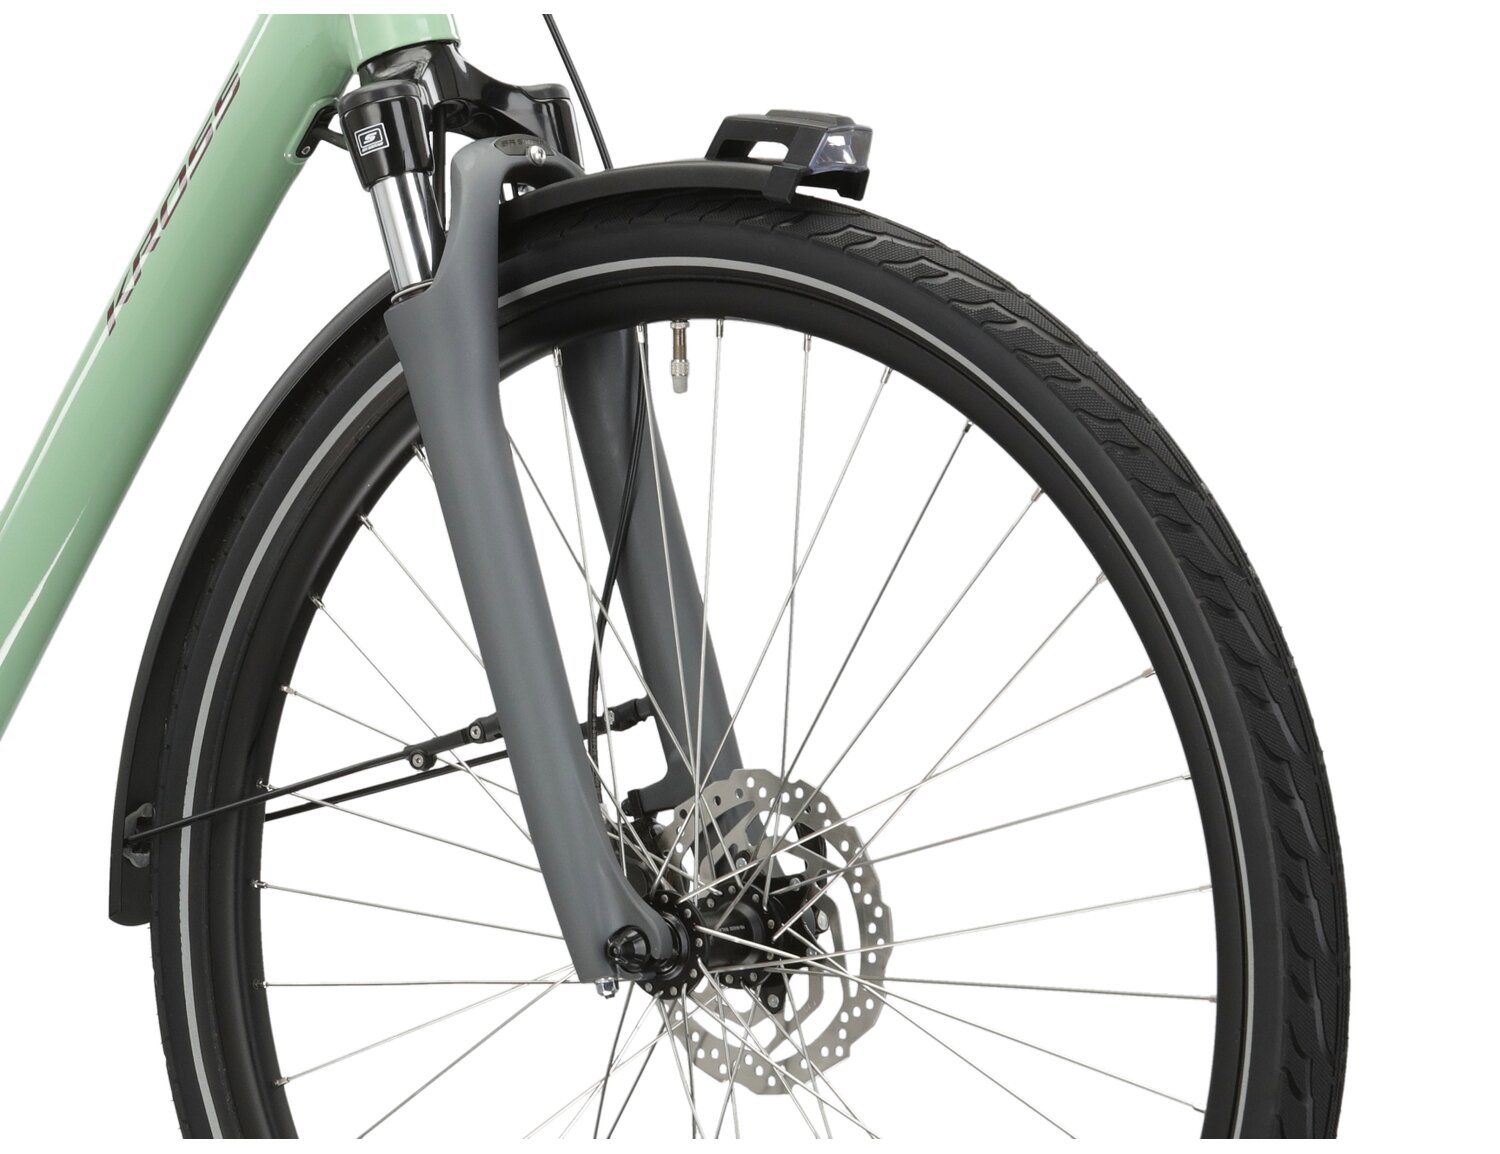 Aluminowa rama, amortyzowany widelec SR SUNTOUR NEX E25 o skoku 50mm oraz opony w elektrycznym rowerze miejskim Ebike City KROSS Sentio Hybrid 4.0 418 Wh 